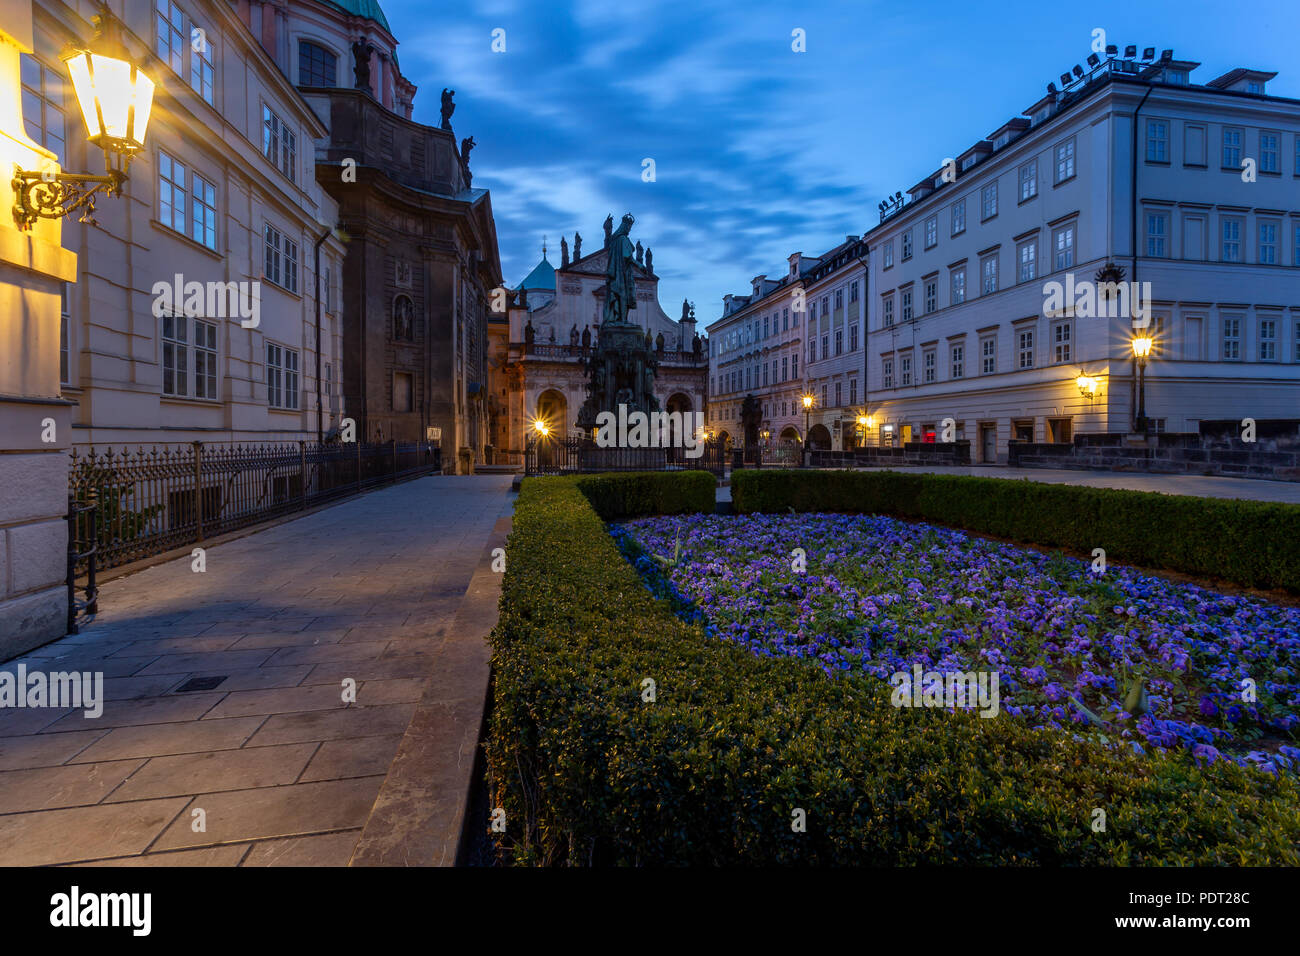 Piazza Krizovnicke al mattino. Ora blu a Praga con la città illuminata lampade a gas e Carlo IV statua, Repubblica Ceca Foto Stock